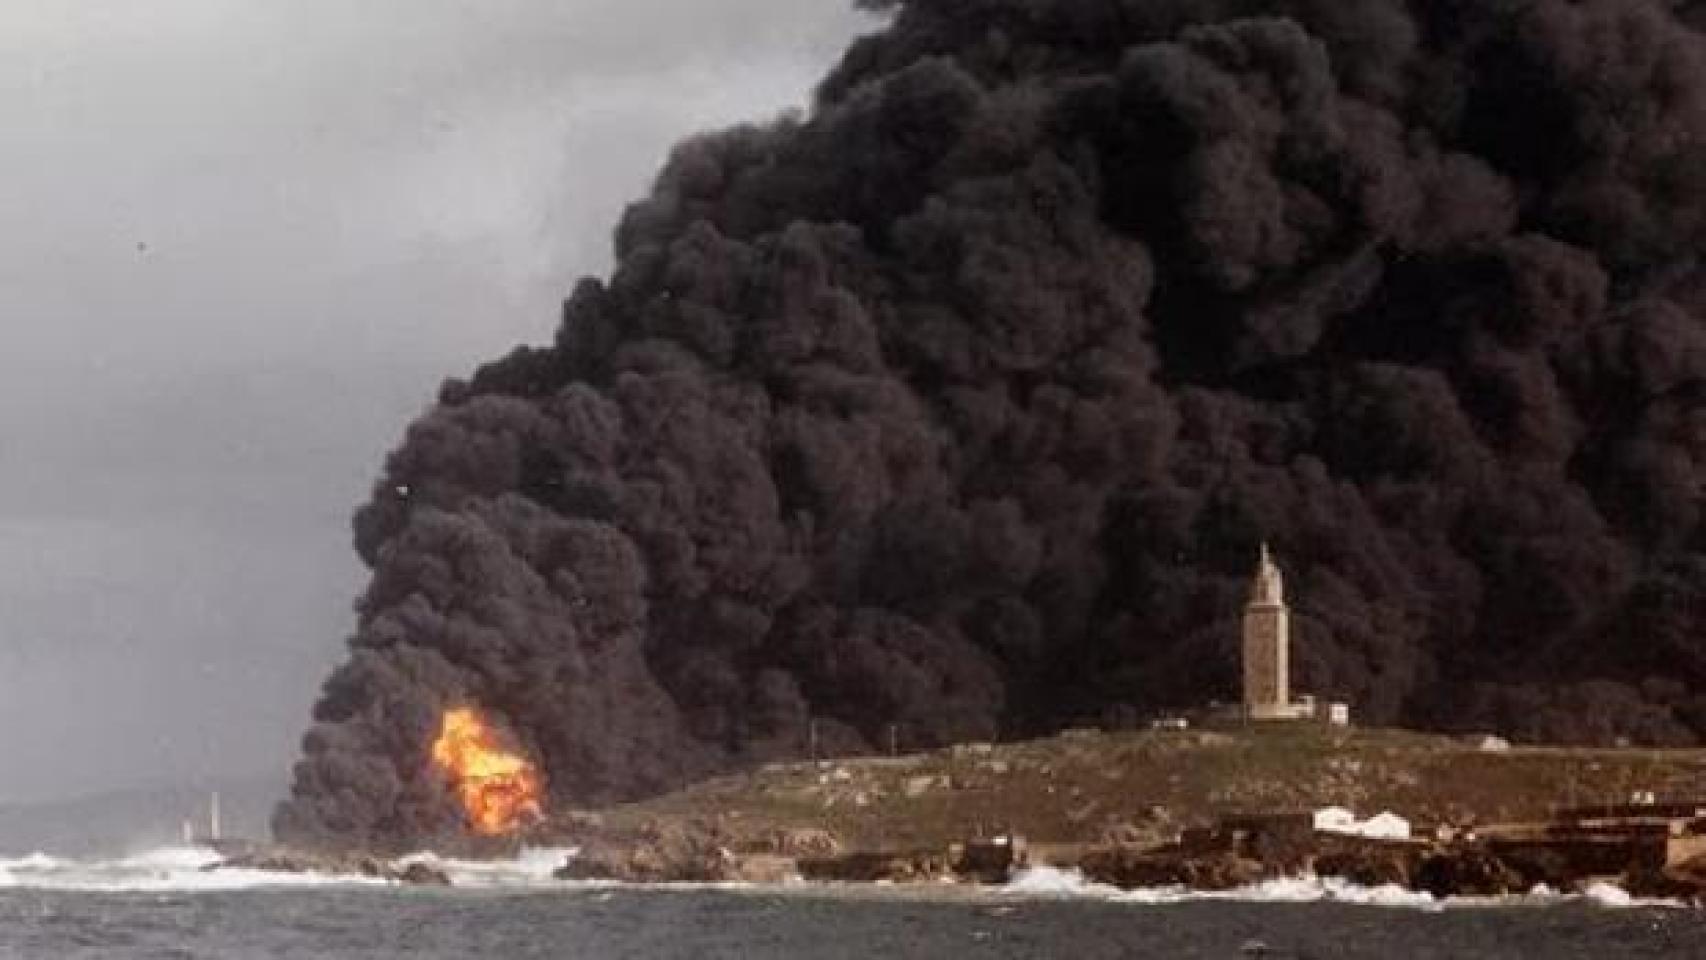 27 años del Mar Egeo, el petrolero que ardió bajo la Torre de Hércules en A Coruña